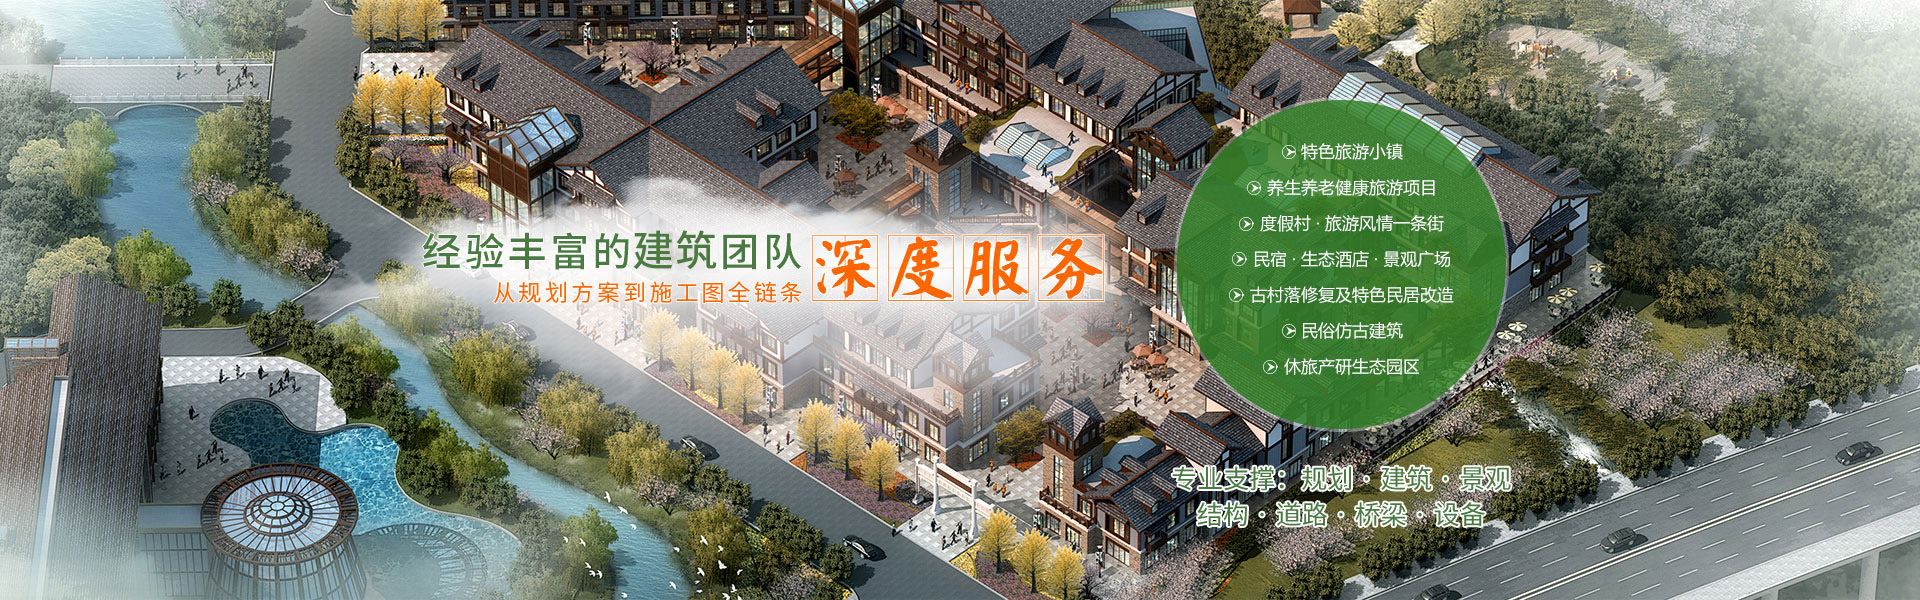 重慶旅游規劃設計(ji)